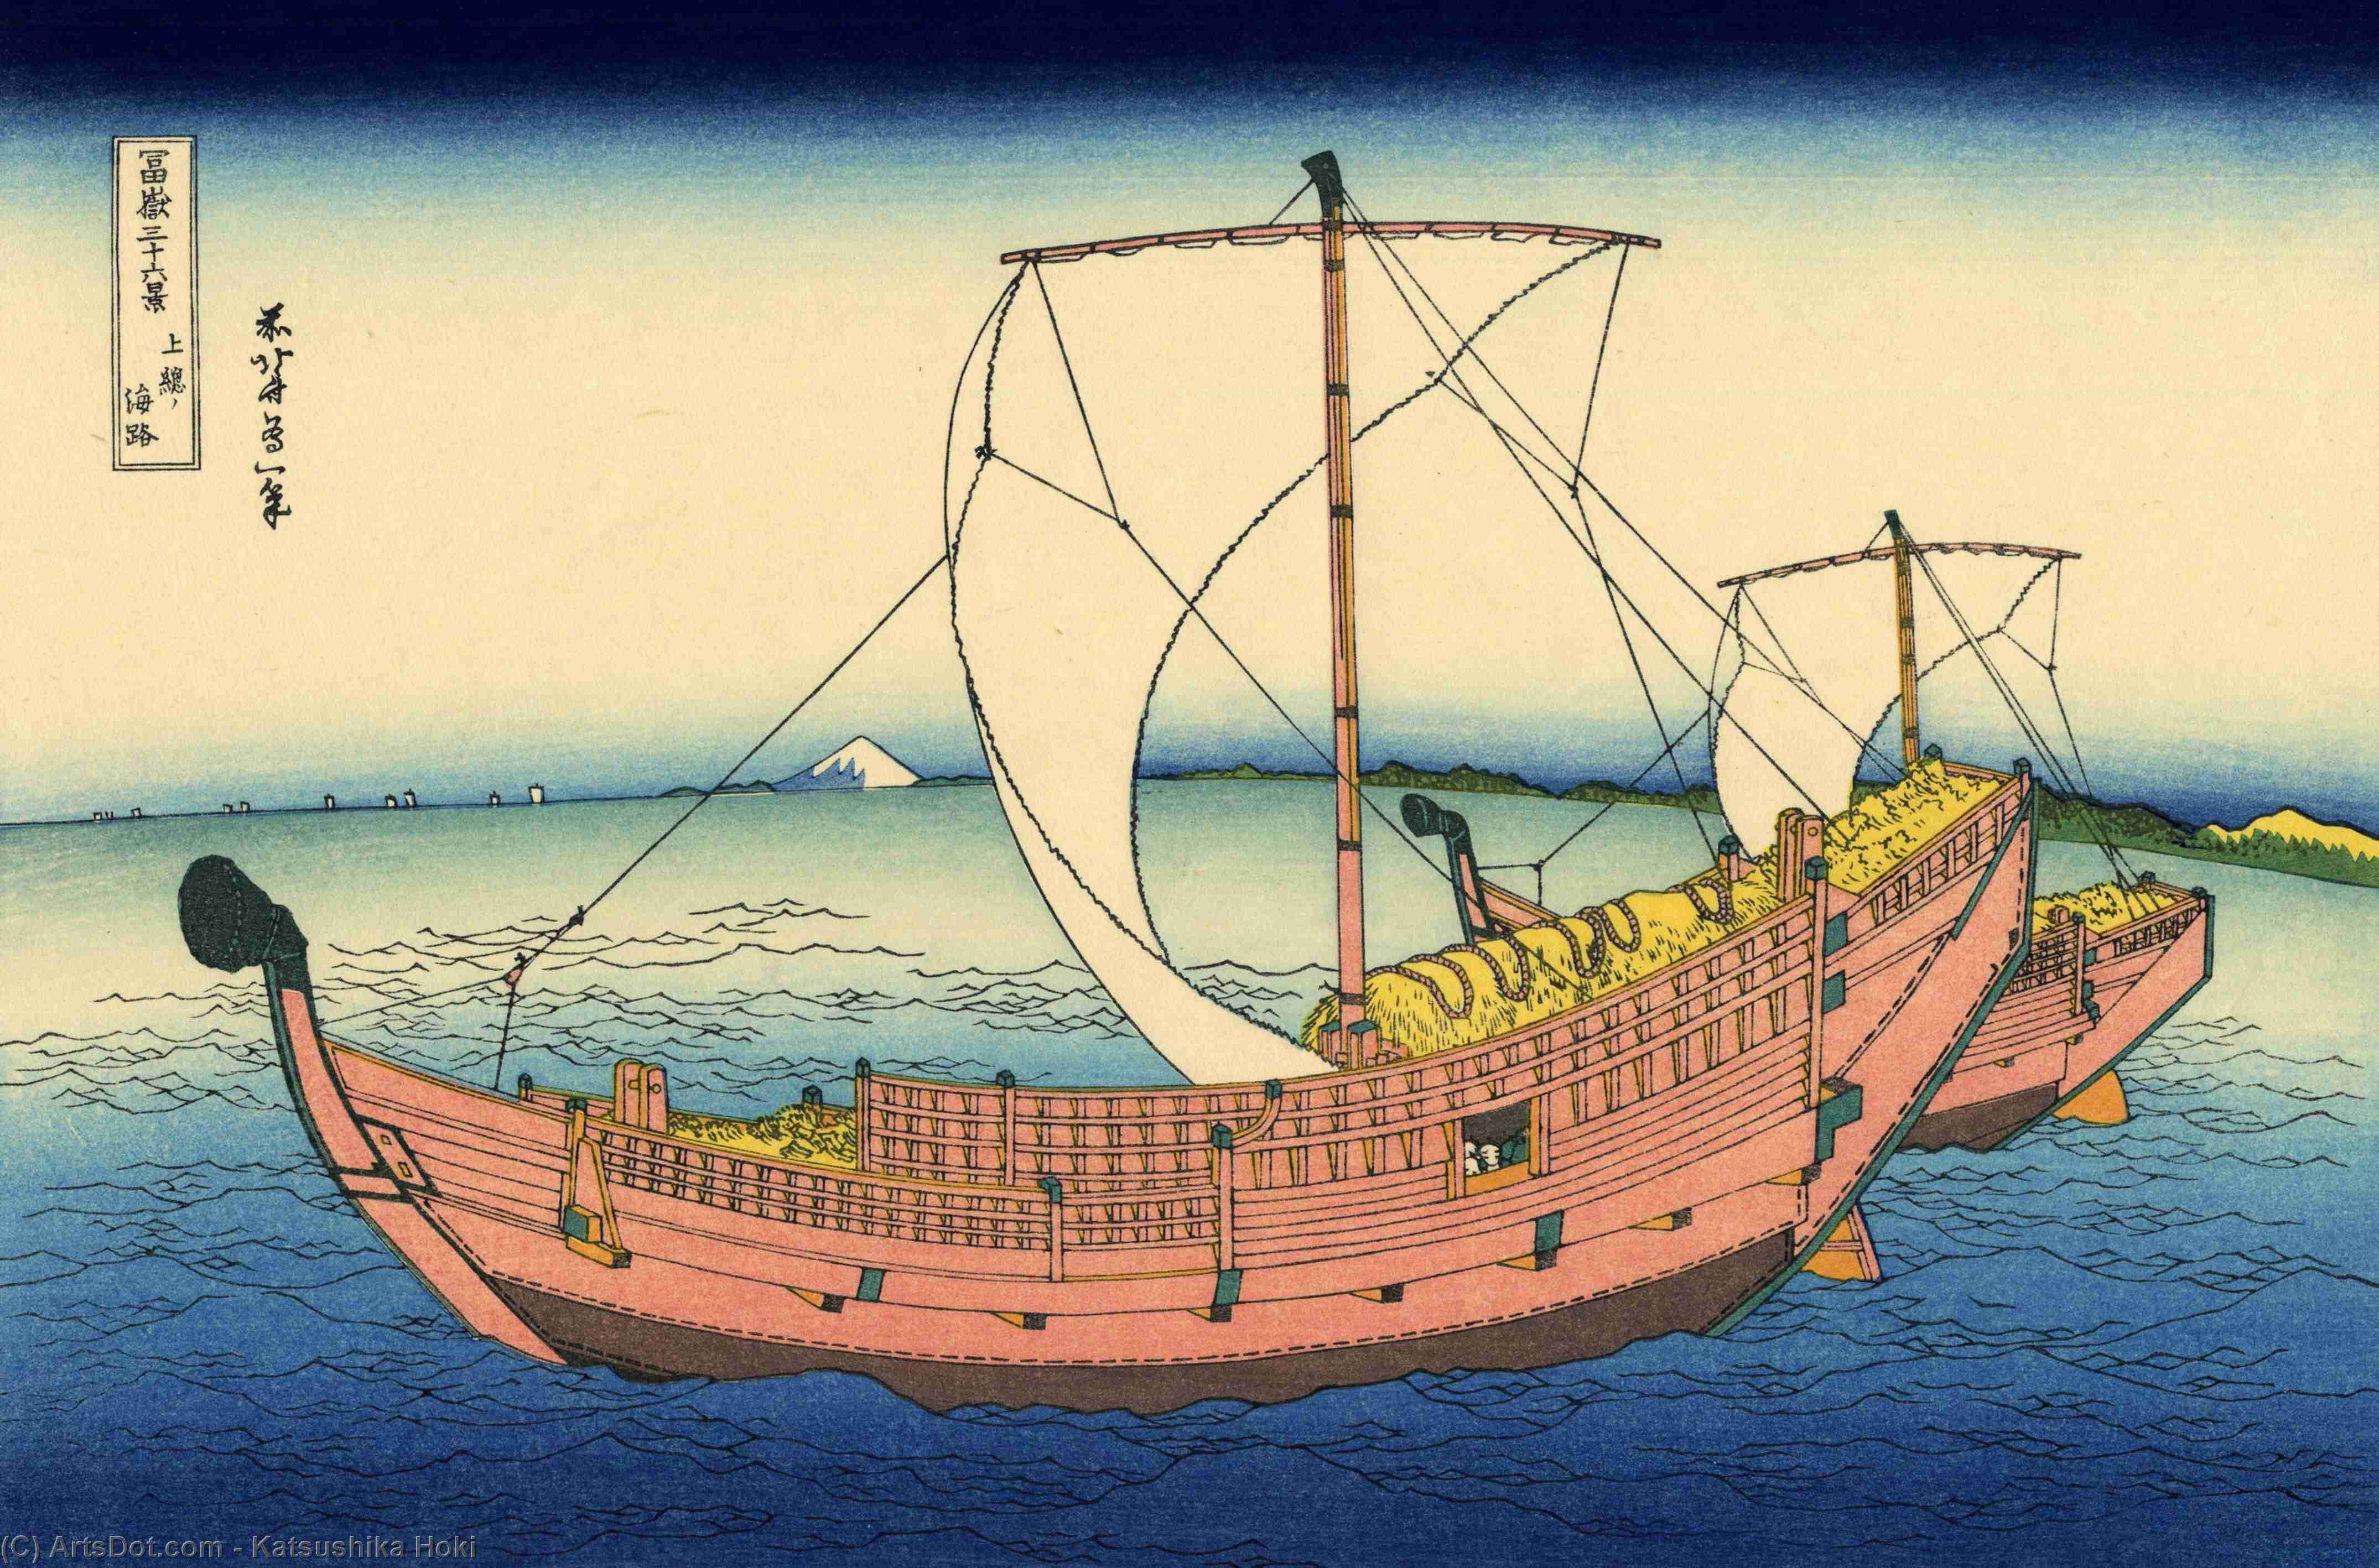 WikiOO.org - Encyclopedia of Fine Arts - Festés, Grafika Katsushika Hokusai - The Kazusa sea route